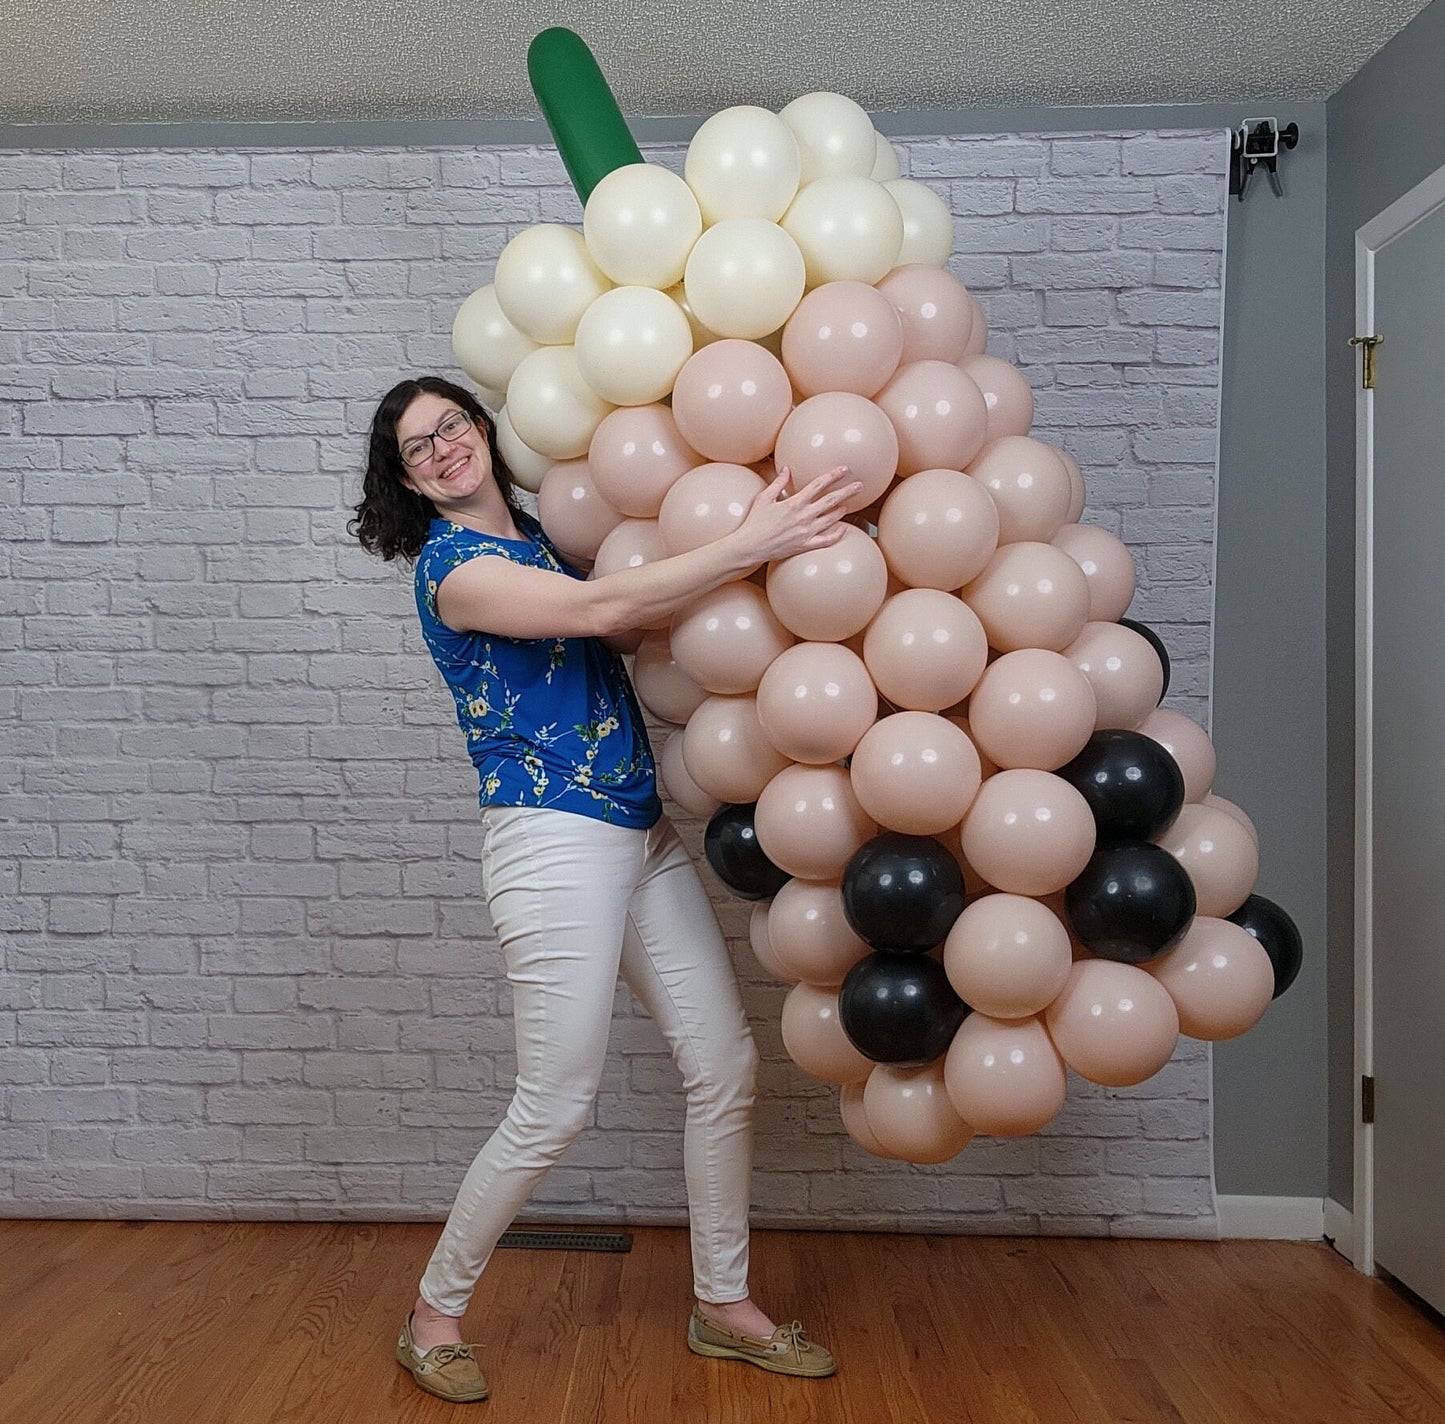 Boba Tea Balloon Column Tutorial and Plans | Digital Balloon Recipe | Bubble Tea Party